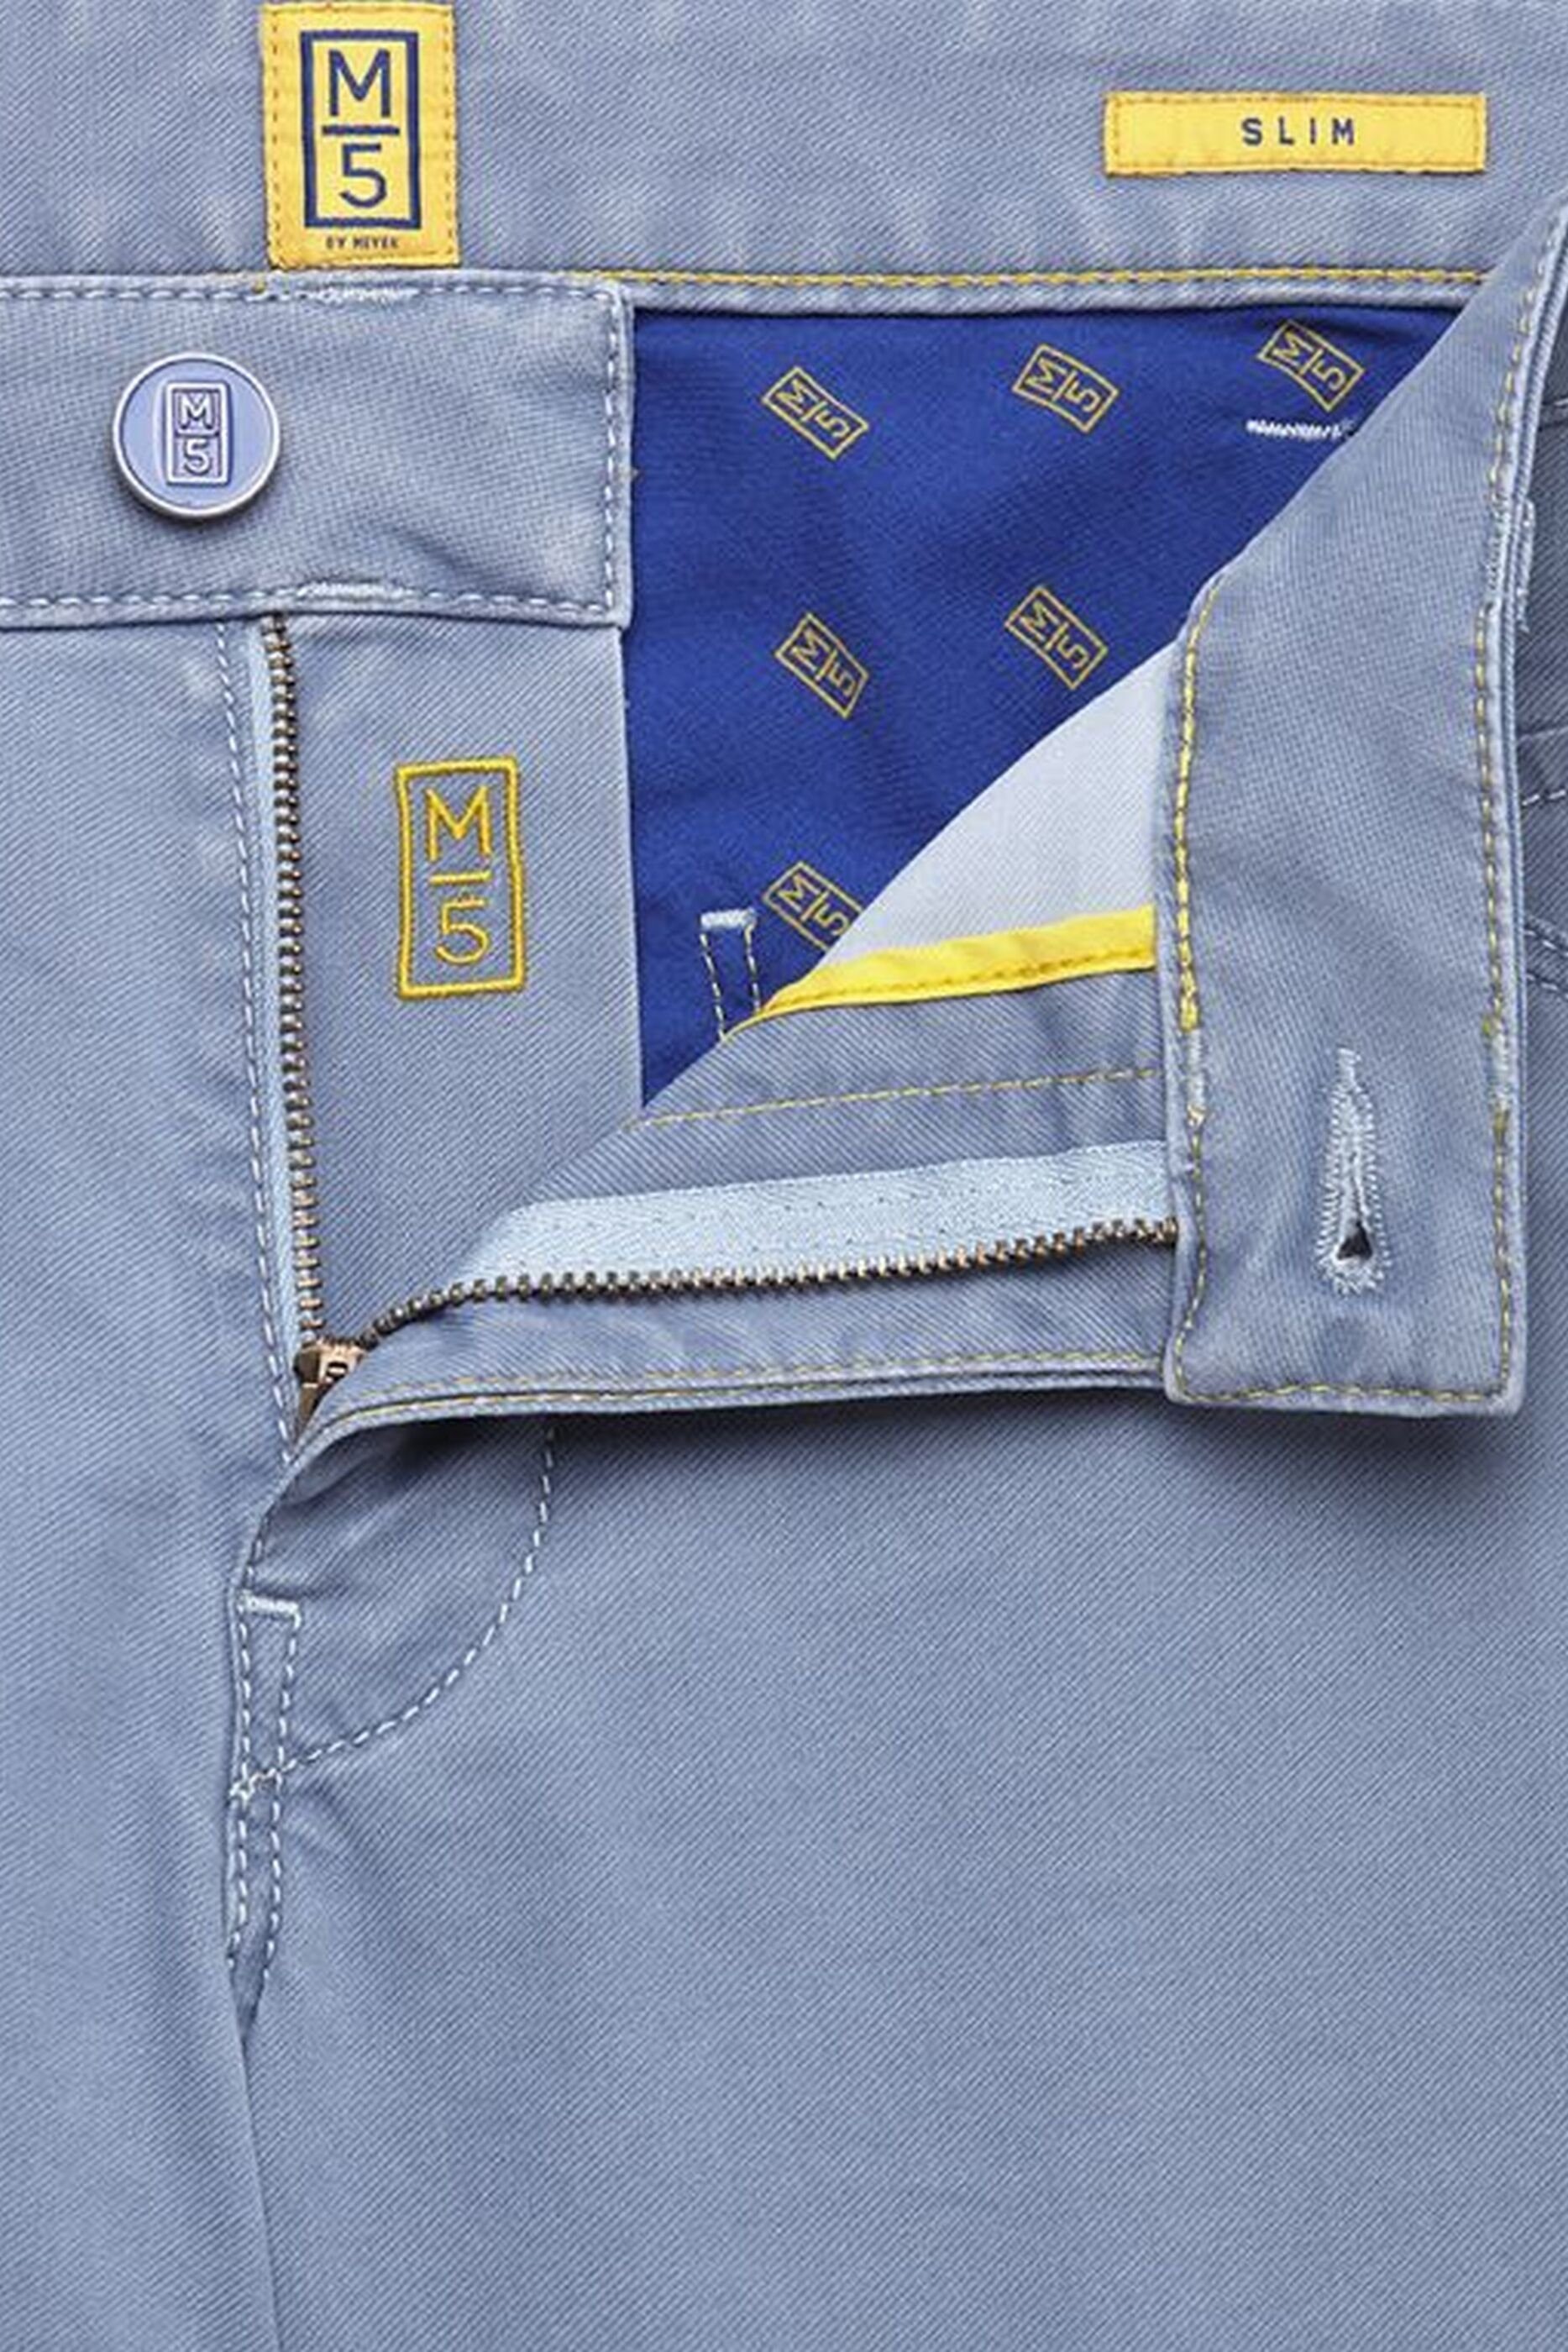 aus Slim-fit-Jeans Produktion MEYER blau europäischer 'M5'